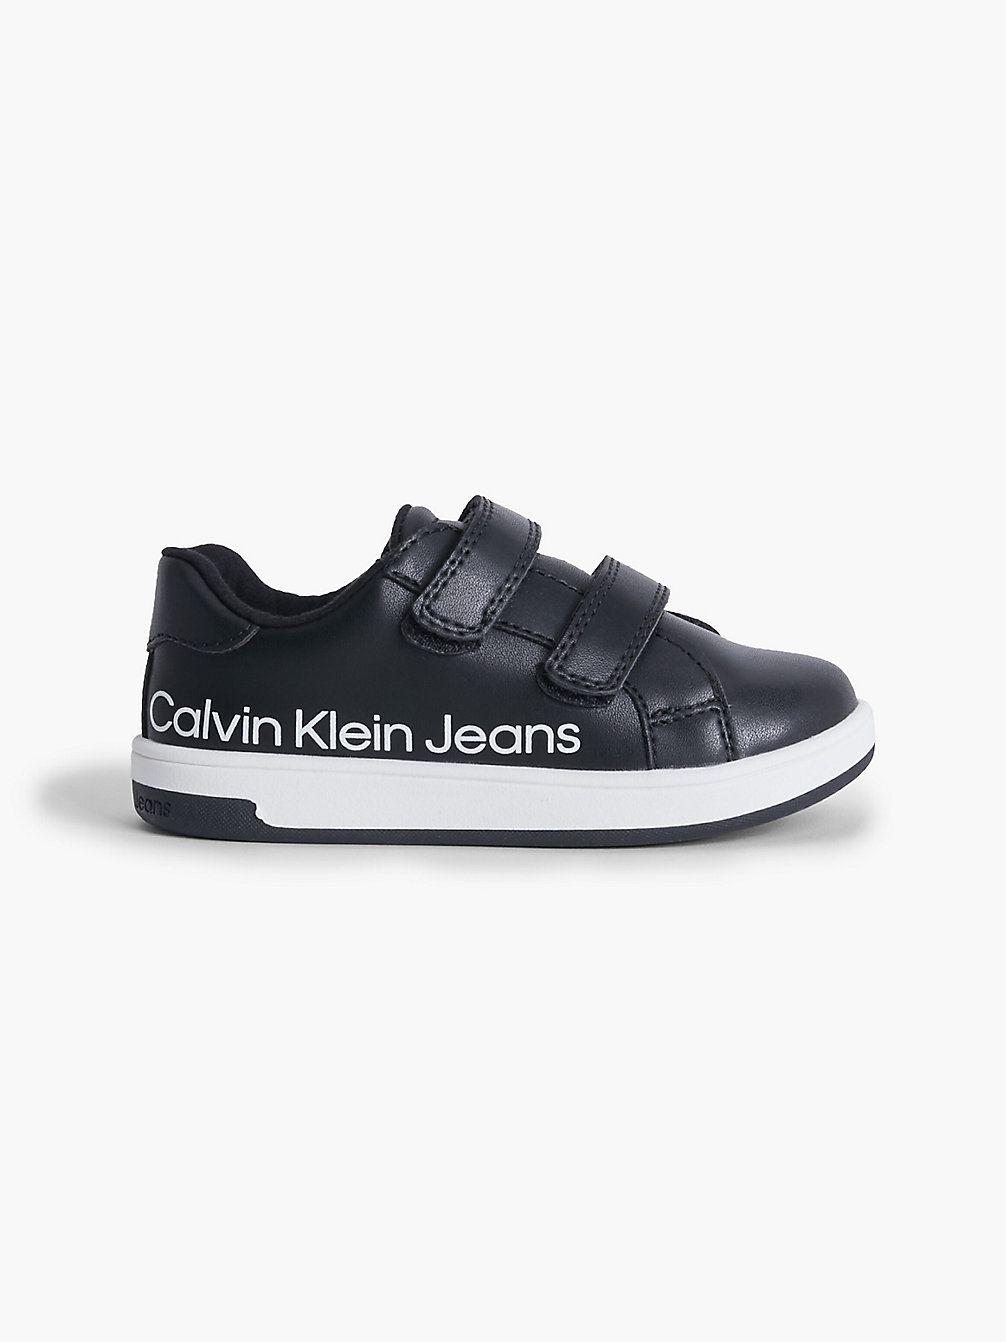 BLACK > Recycelte Sneakers Für Kleinkinder Und Kinder > undefined kids unisex - Calvin Klein